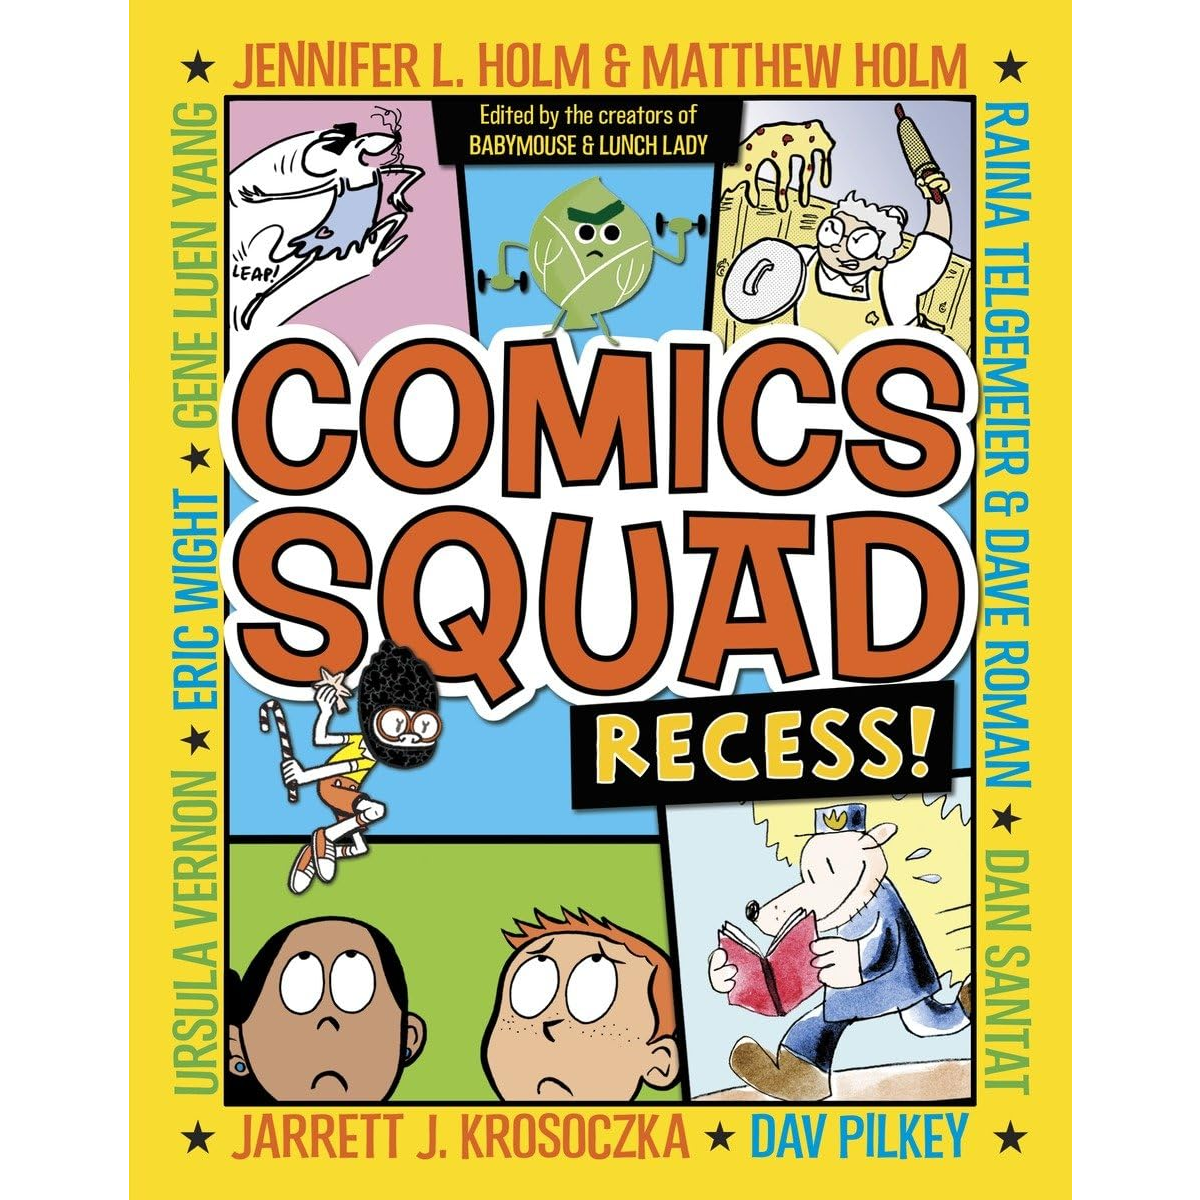 Random House Graphic Comics Squad: Recess! (7+)